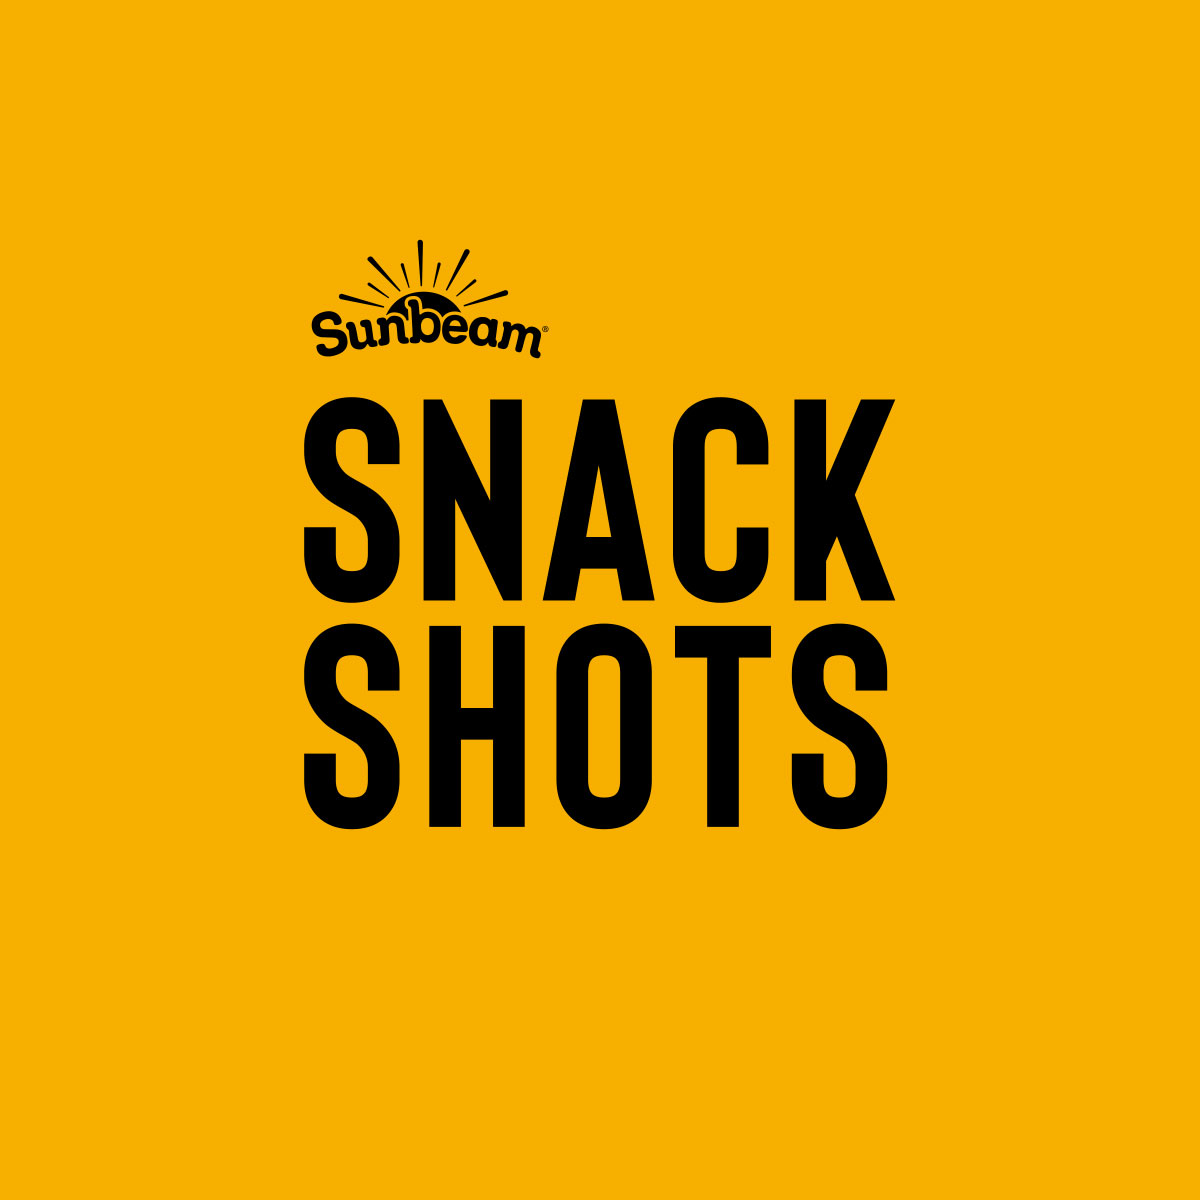 Sunbeam Snack Shots Brand Mark